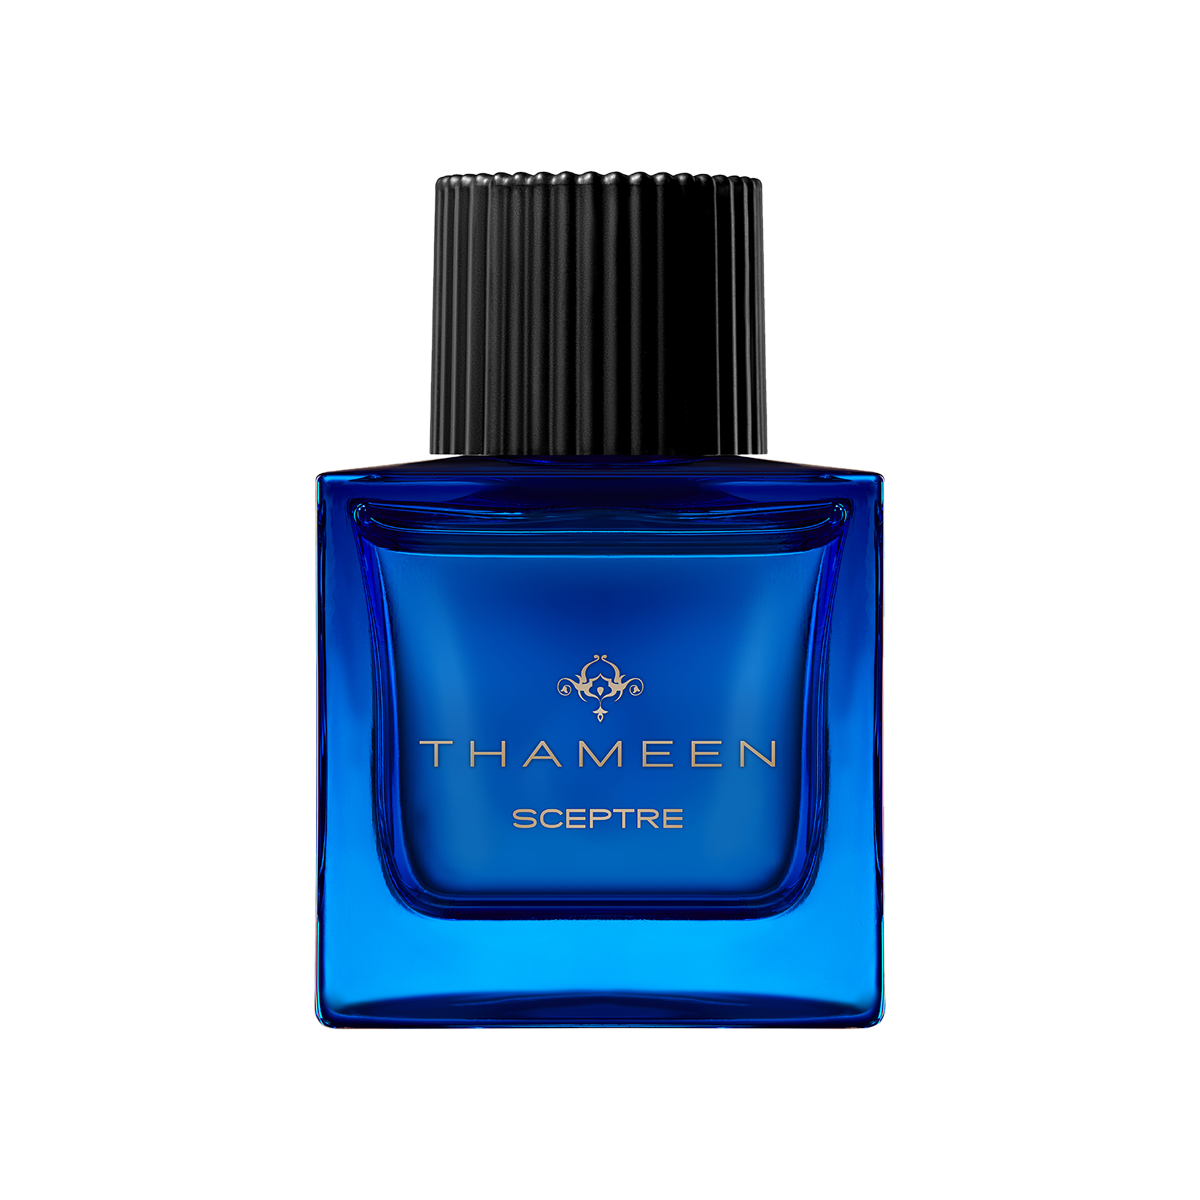 Thameen London - Sceptre Extrait de Parfum